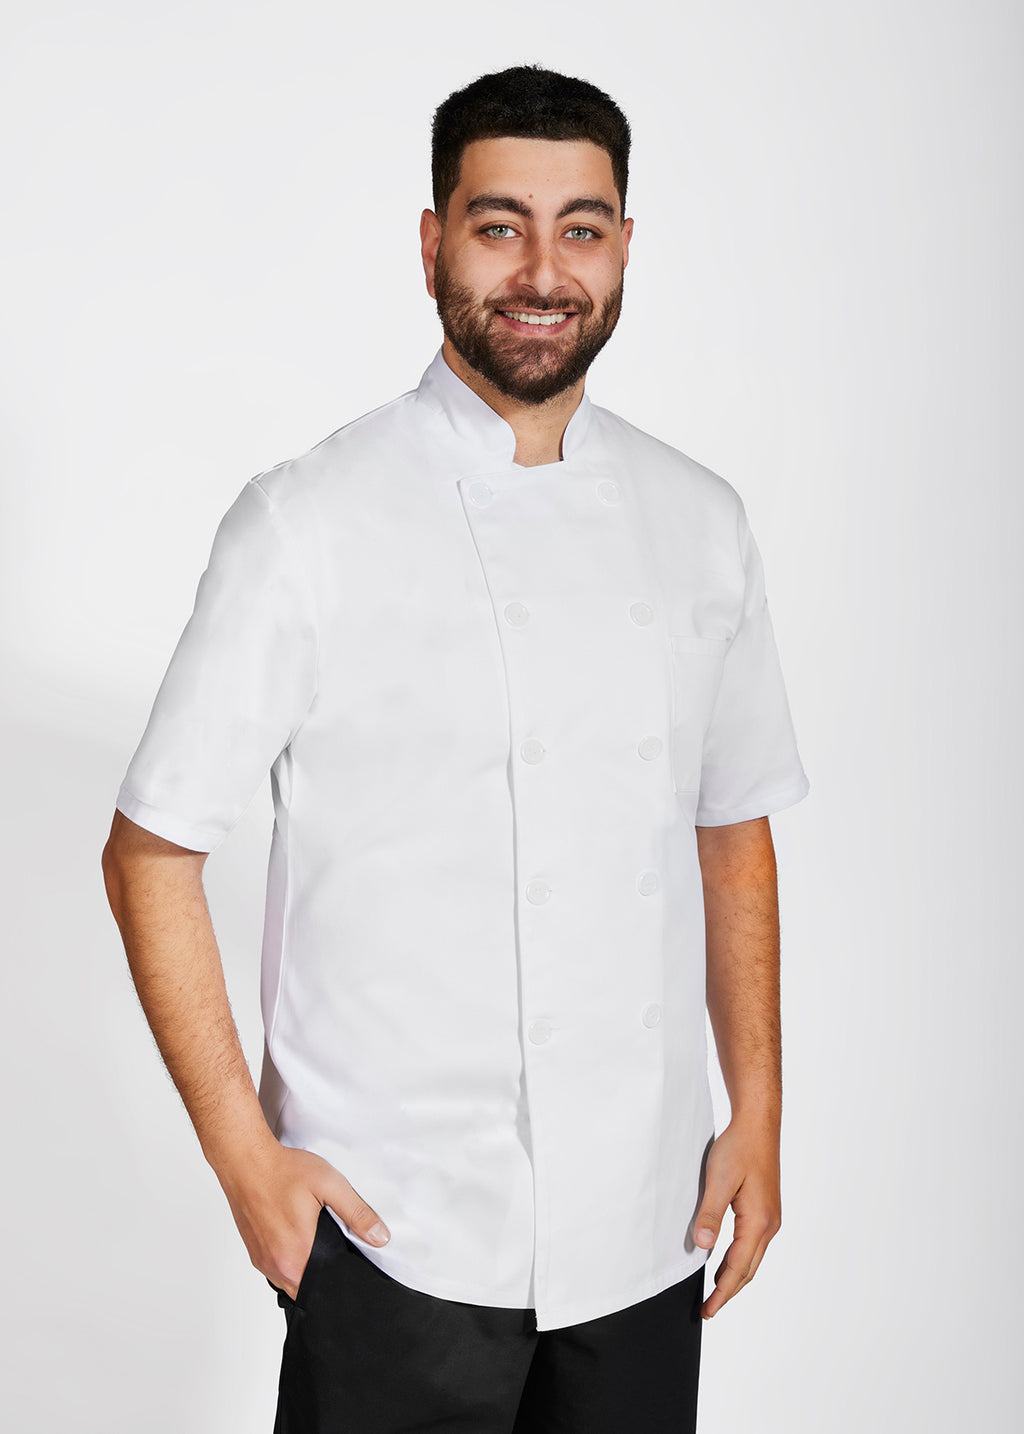 Product - Unisex Short Sleeve MOBB Chef Coat